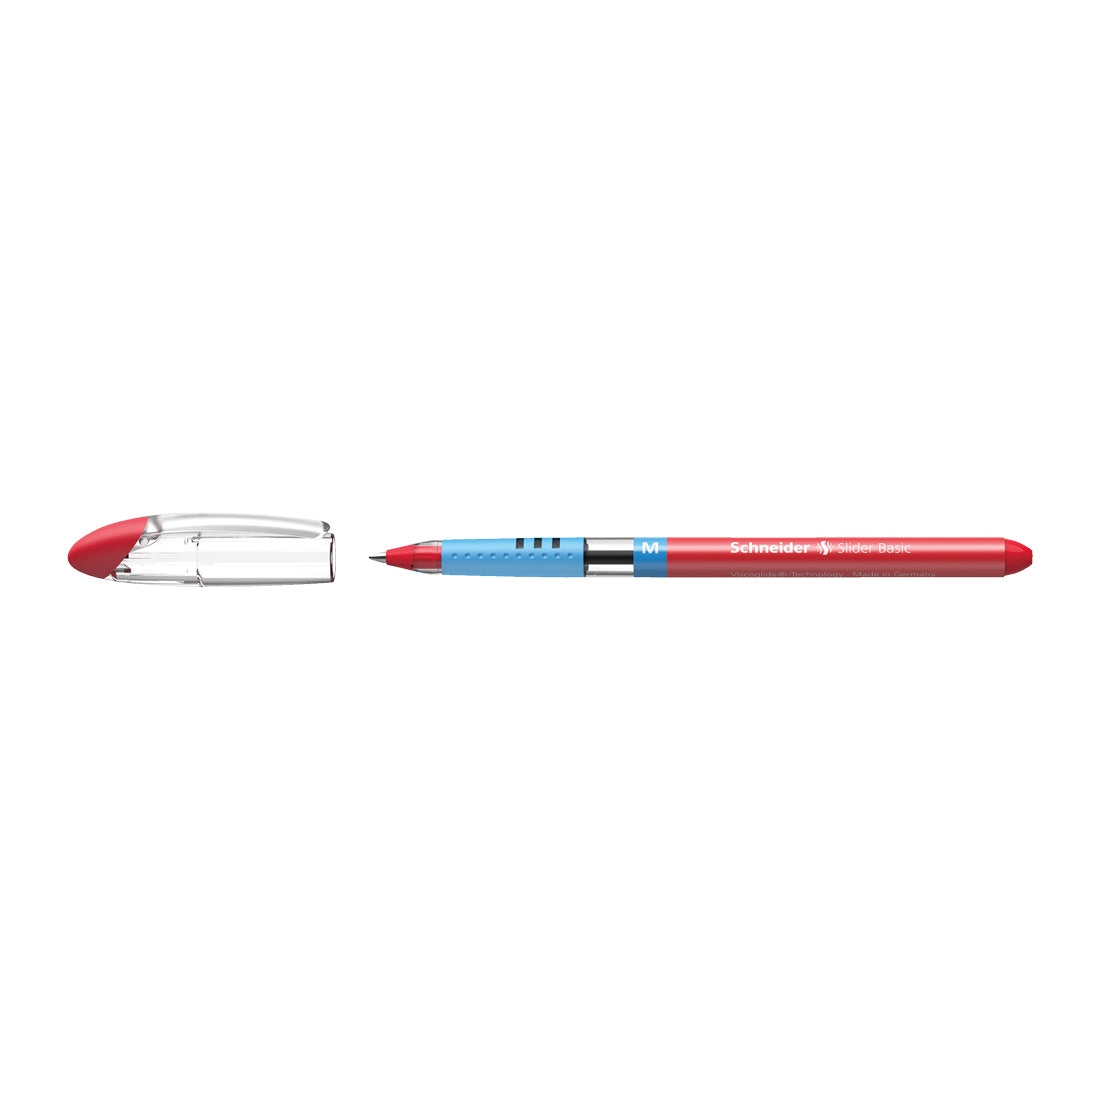 Slider BASIC Ballpoint Pens M, Box of 10#ink-colour_red